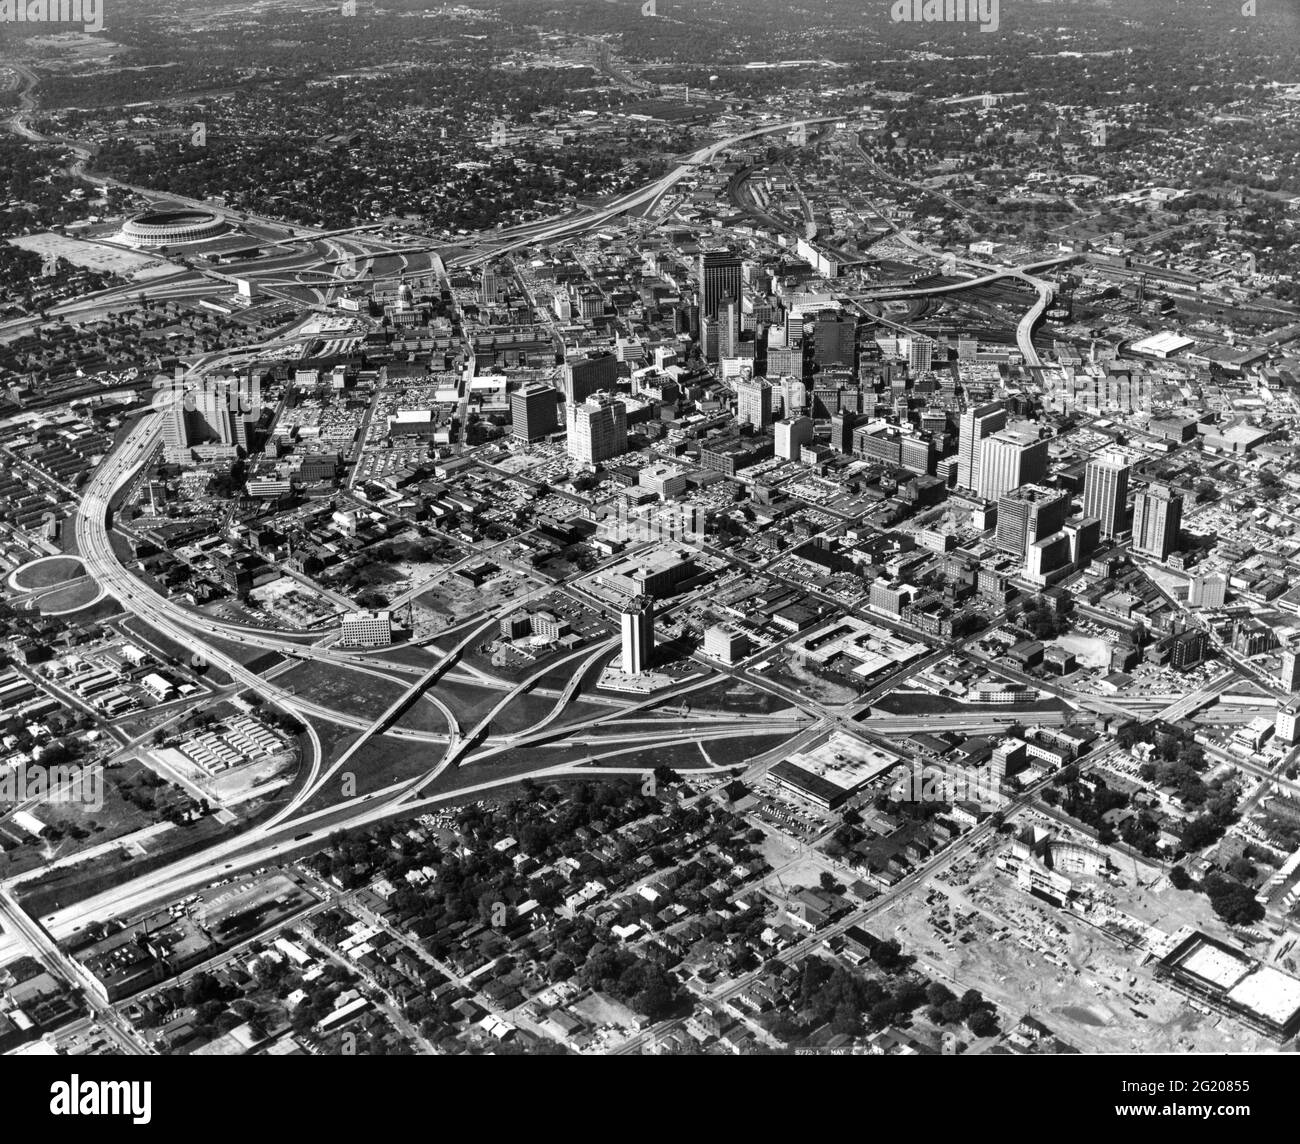 Esta vista aérea del centro de Atlanta, GA muestra en la parte superior izquierda el estadio de Atlanta de $18 millones, sede de los Bravos de la Liga Nacional, Falcons de la Liga Nacional de Fútbol y los Jefes de la Liga Profesional de Fútbol, Atlanta, GA, alrededor de 1966. (Foto de la Agencia de Información de los Estados Unidos/RBM Vintage Images) Foto de stock